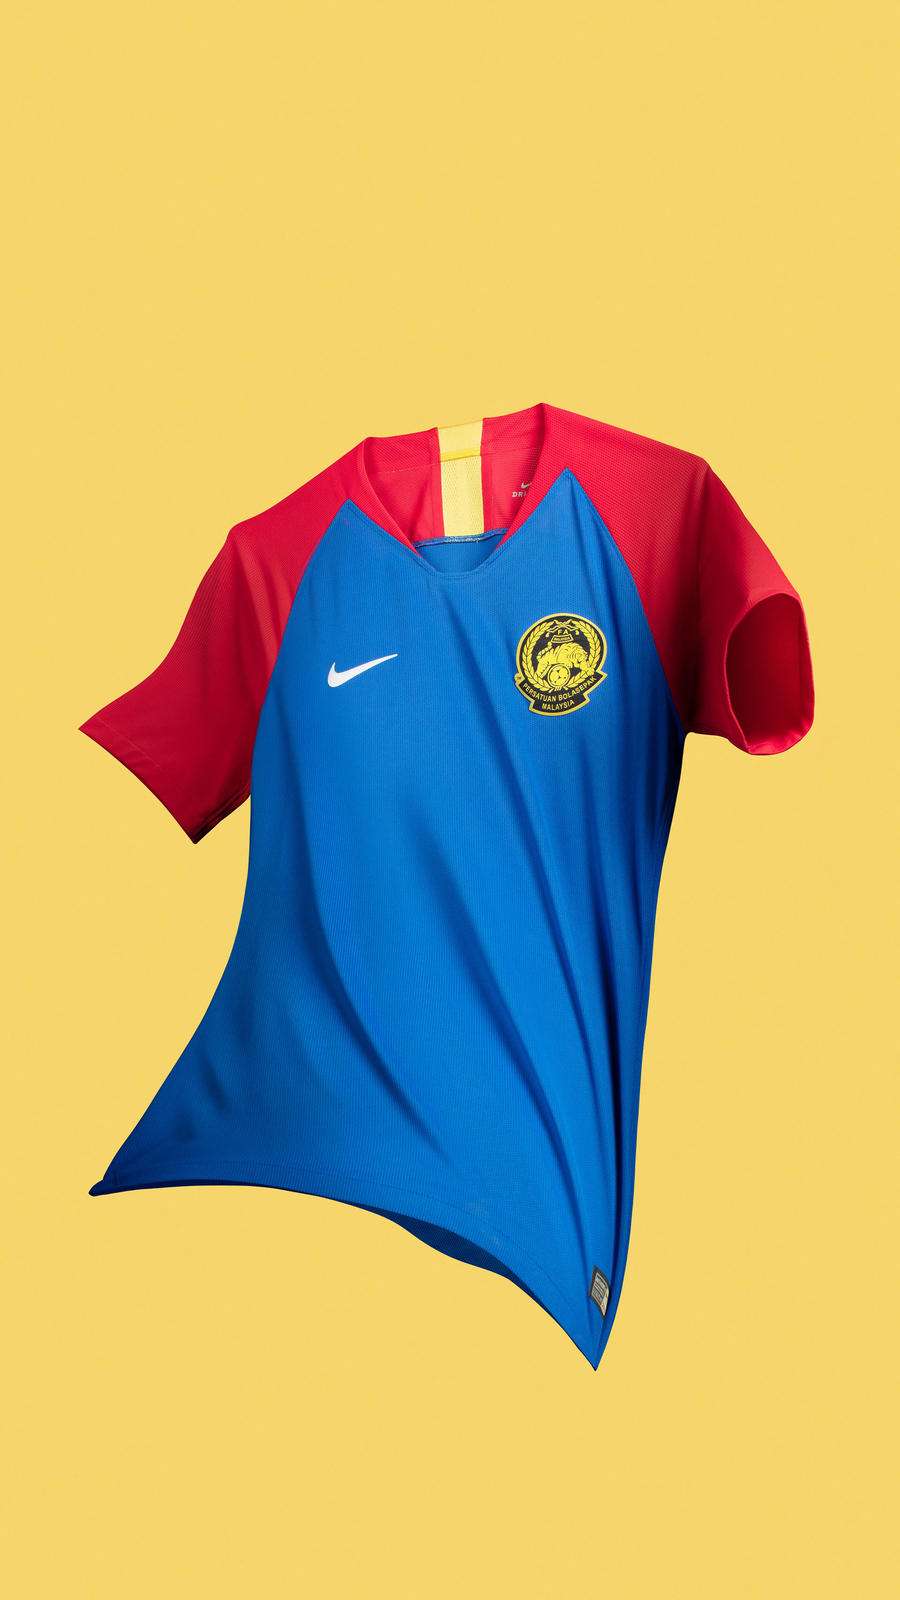 Nike Malaysia jersey away